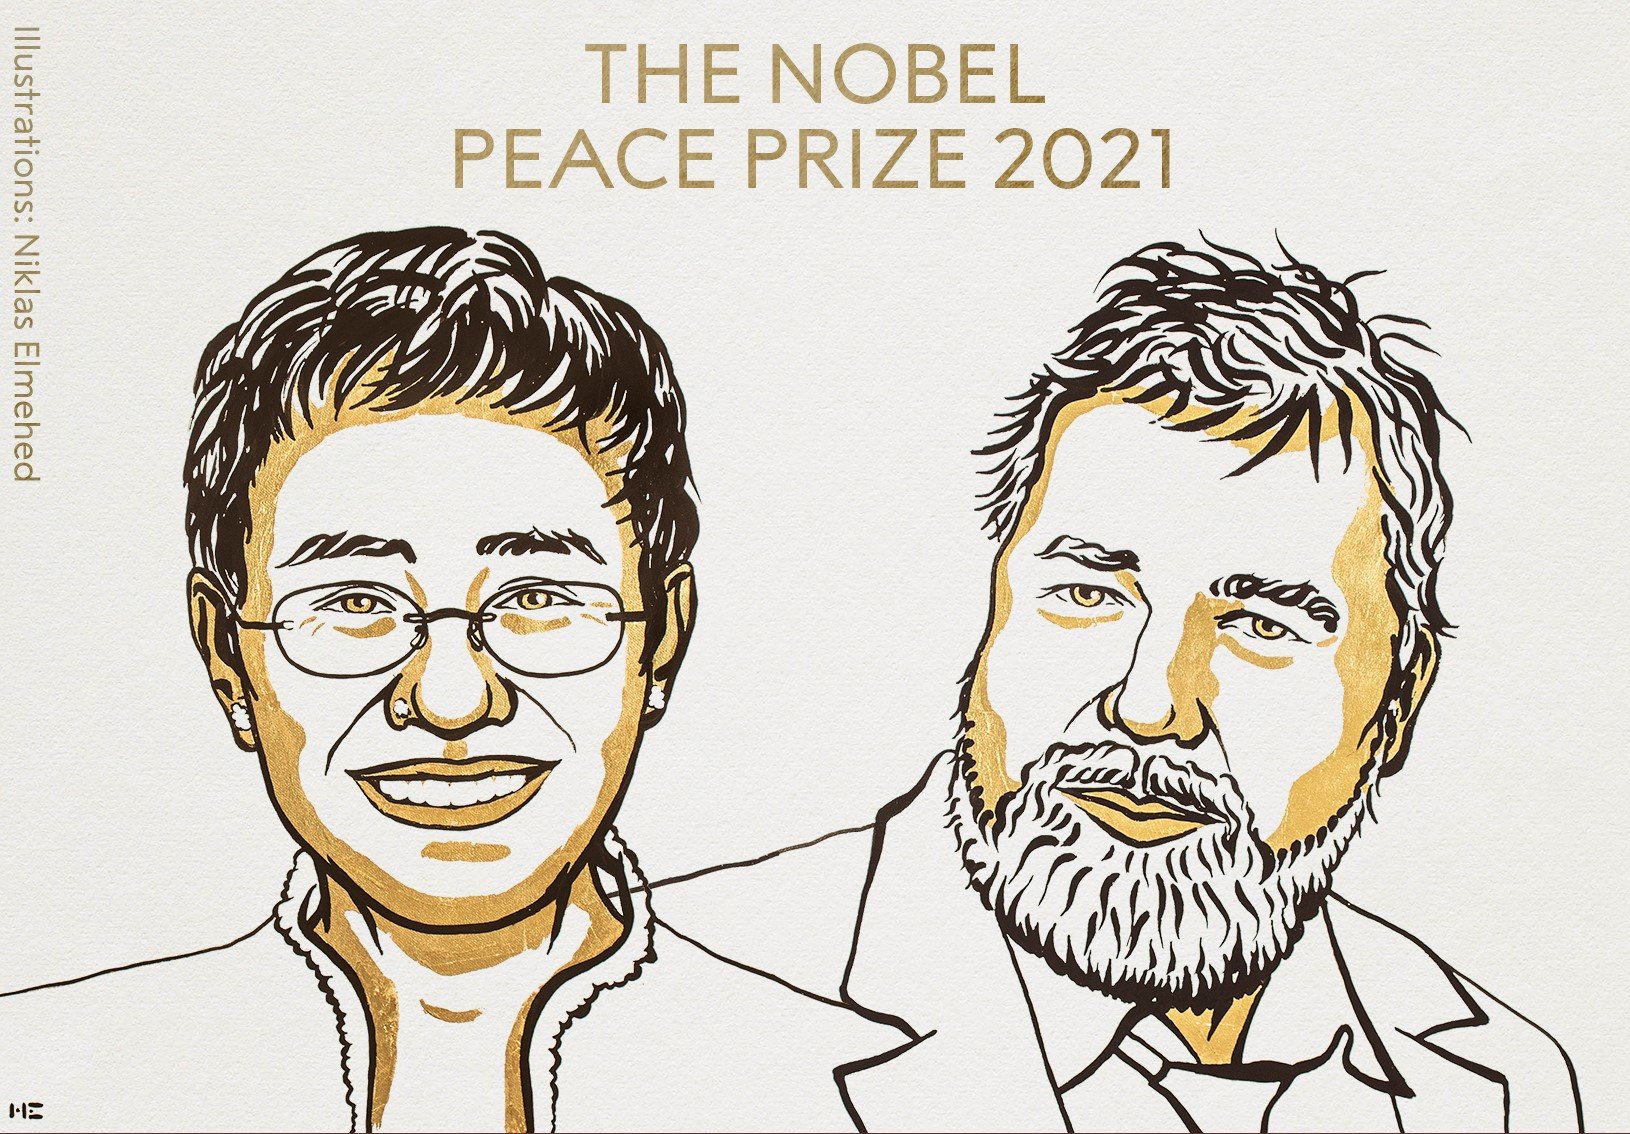 Los periodistas María Ressa y Dmitry Muratov, premios Nobel de la Paz